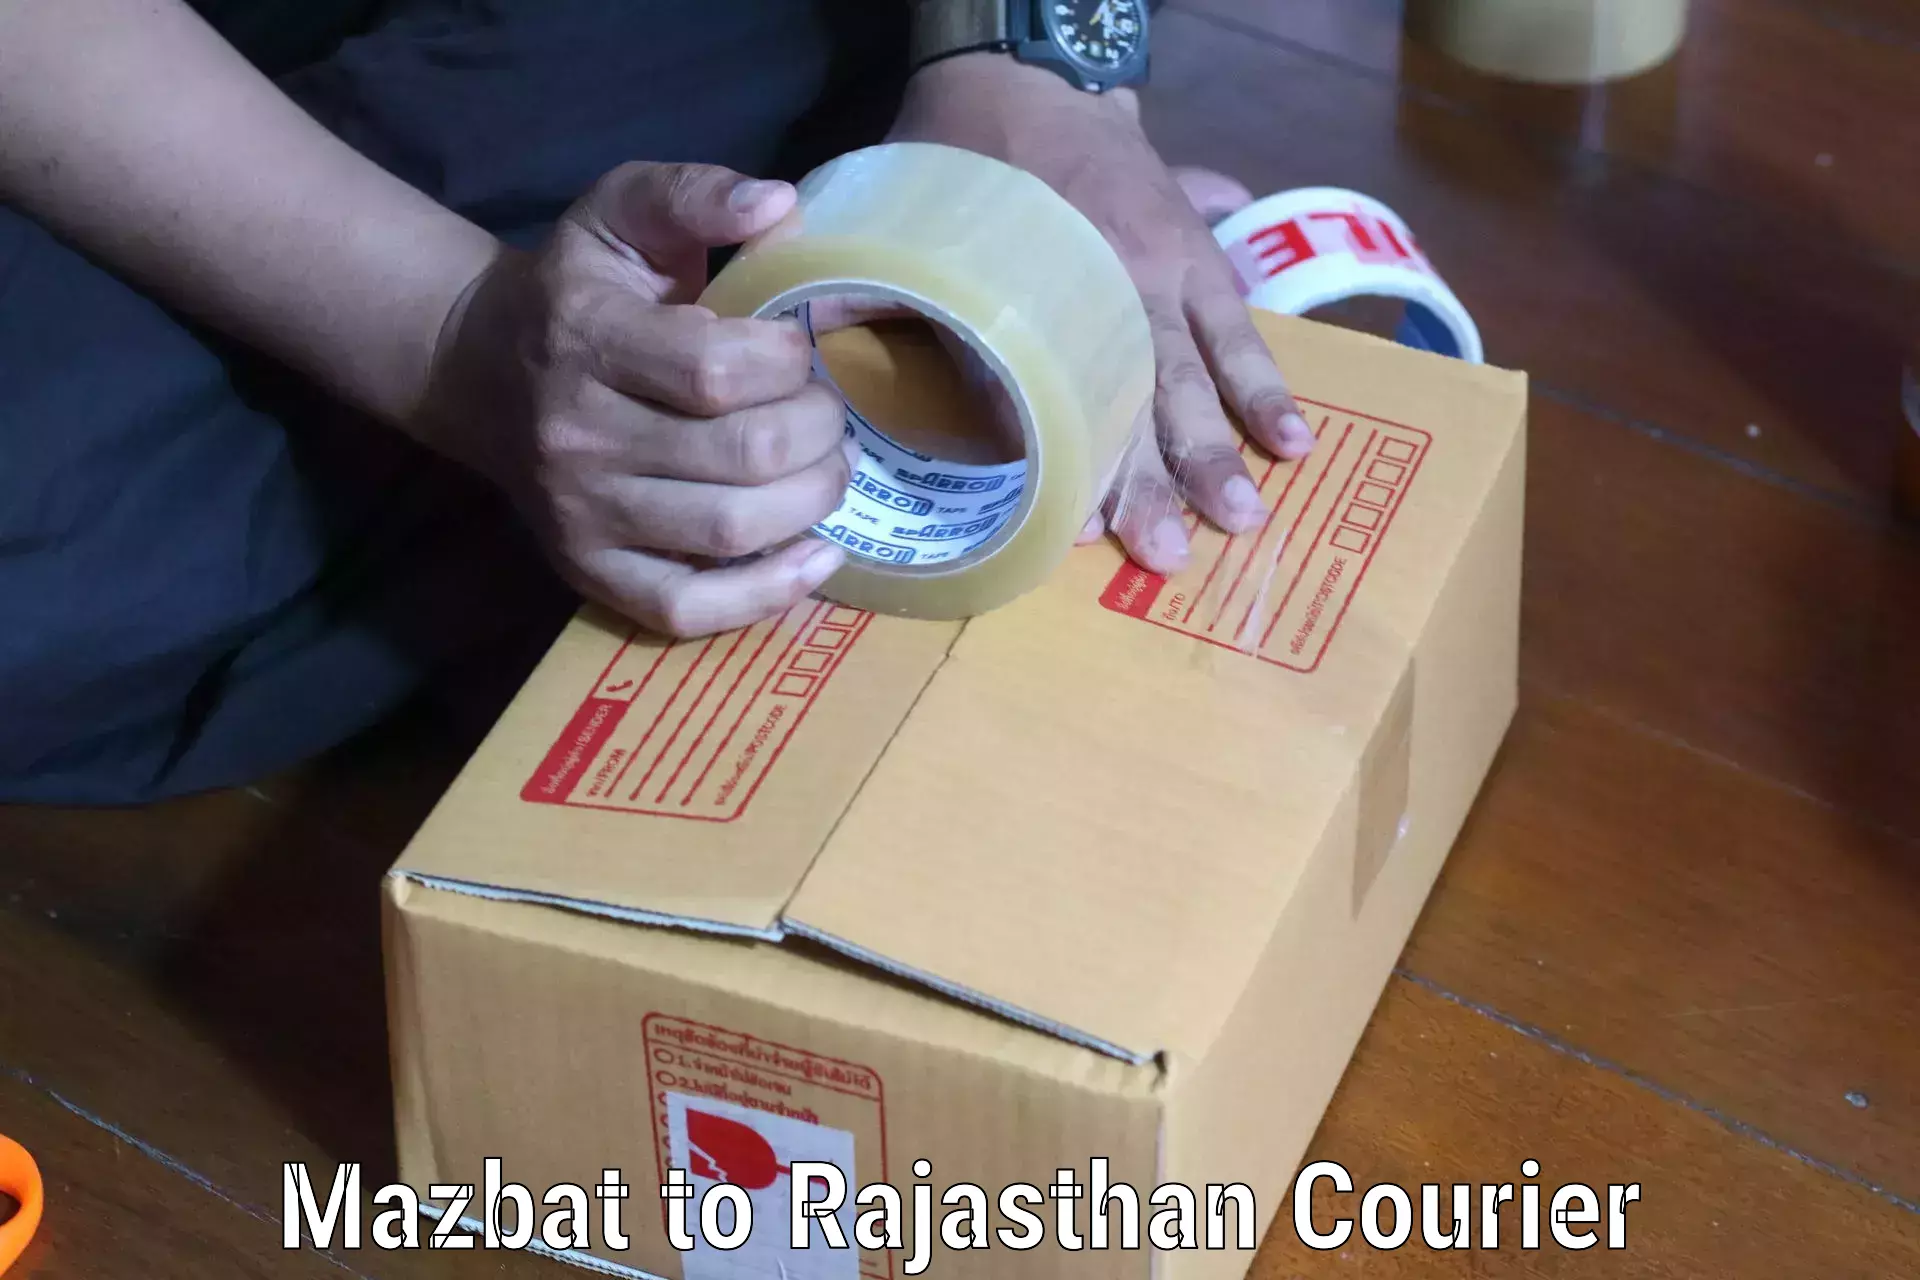 Urban courier service Mazbat to Pokhran